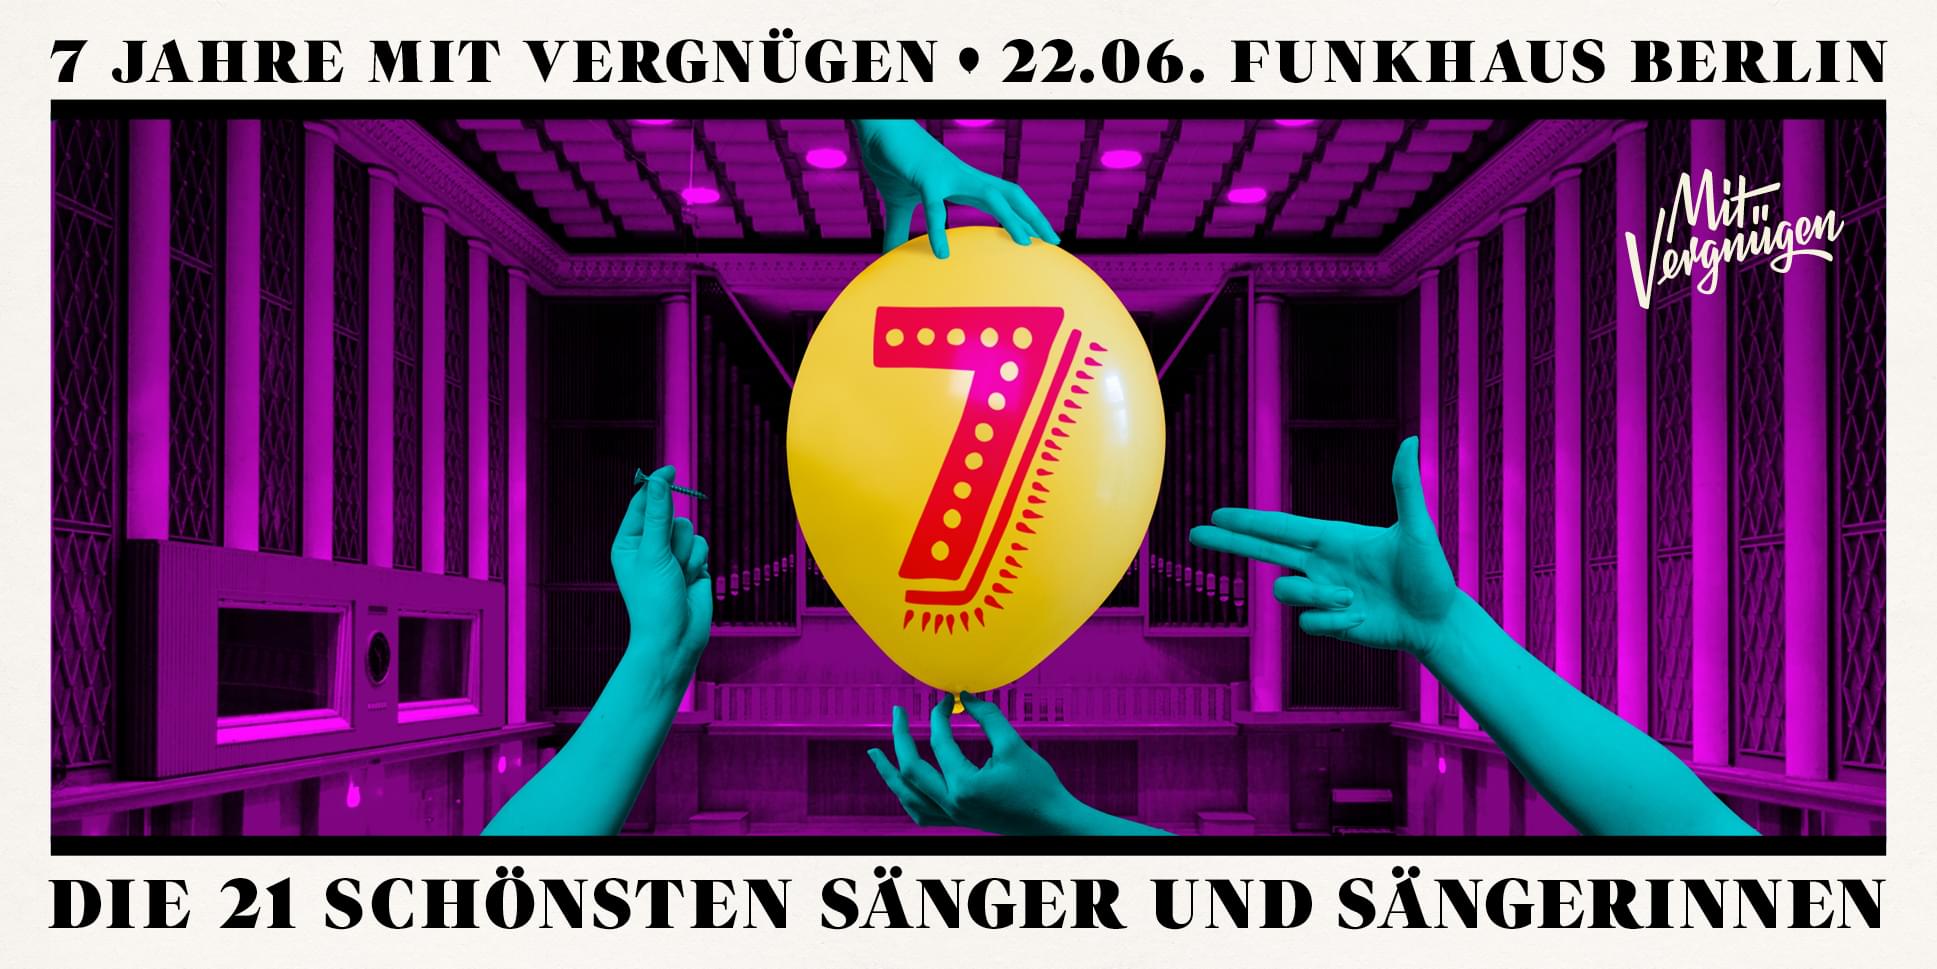 Tickets 7 Jahre Mit Vergnügen, live im Funkhaus in Berlin